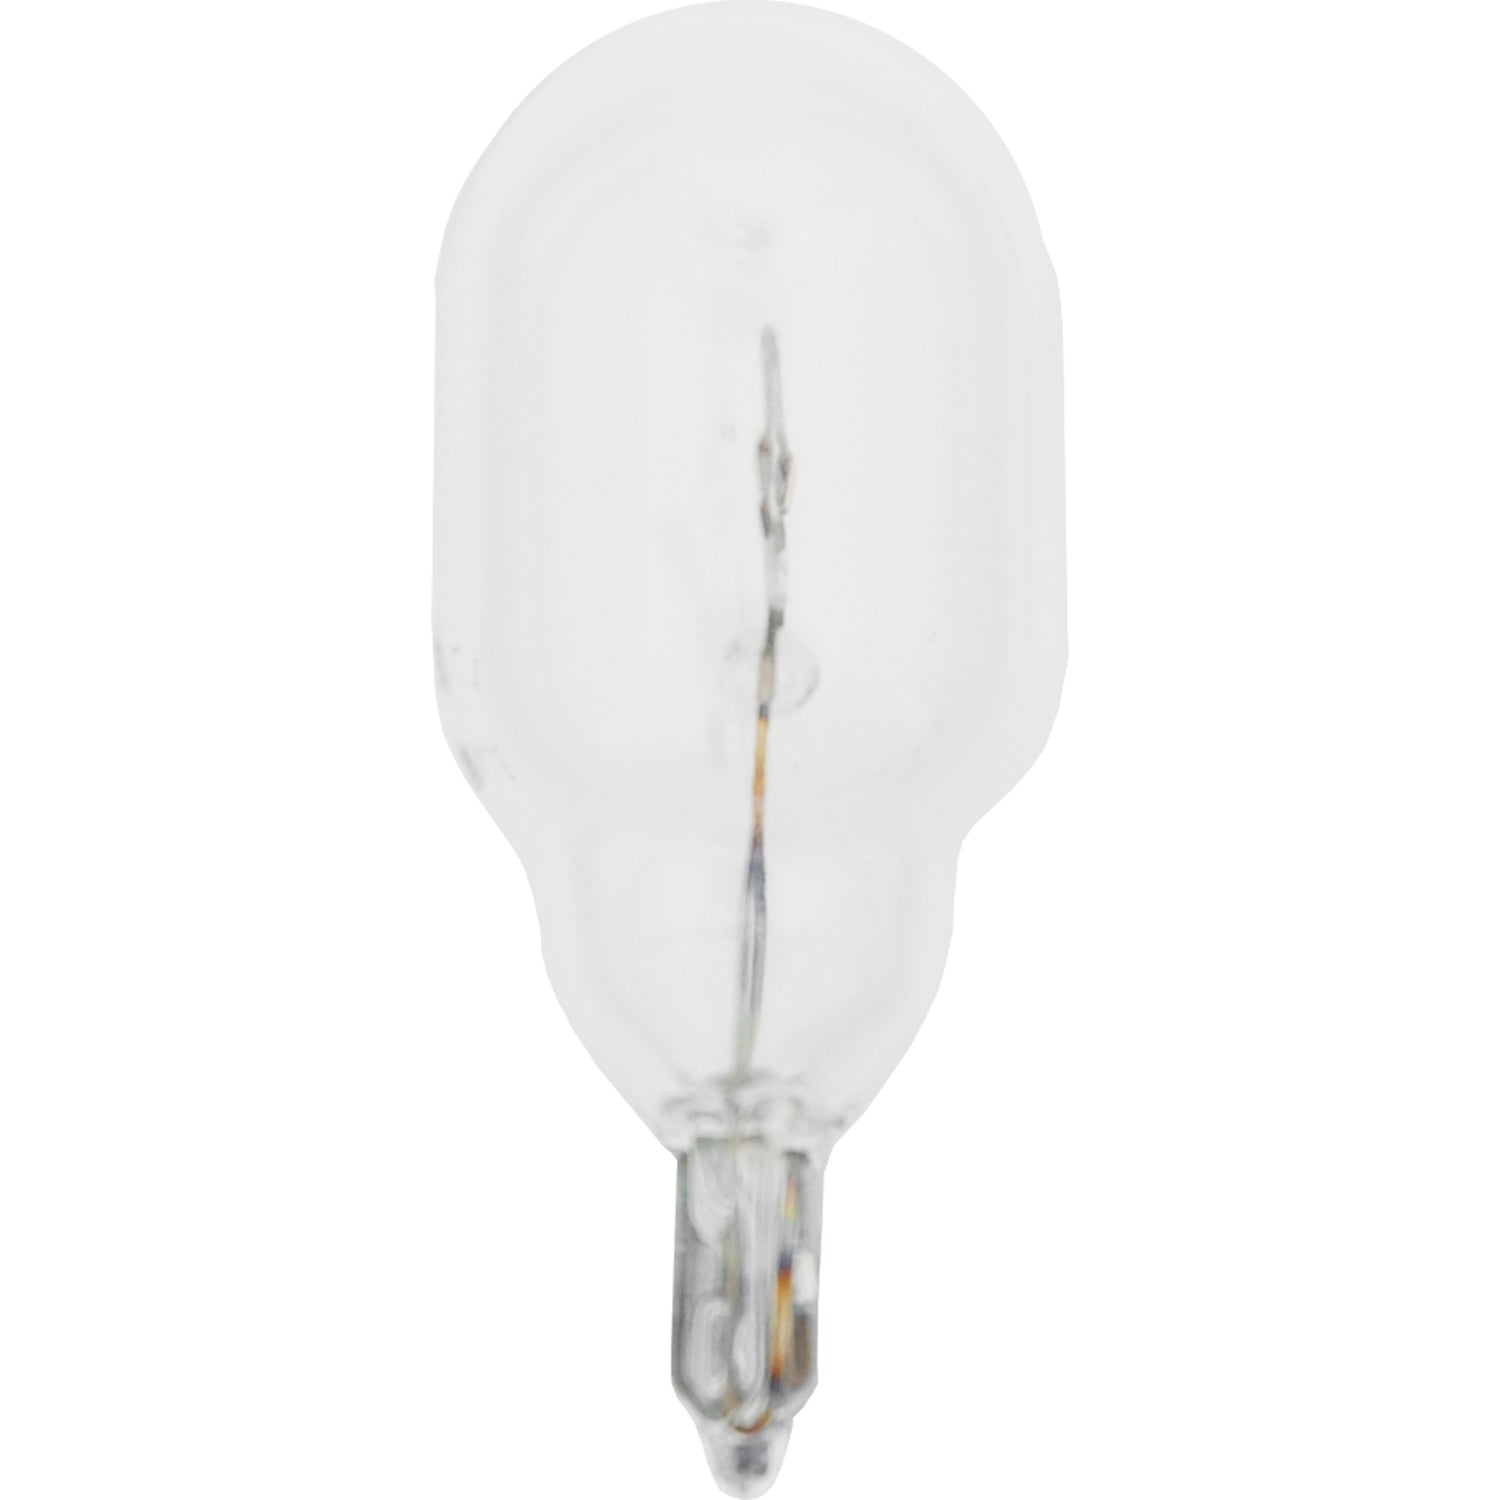 SIGNAL LAMPS (single contact)-W16W / WY16W